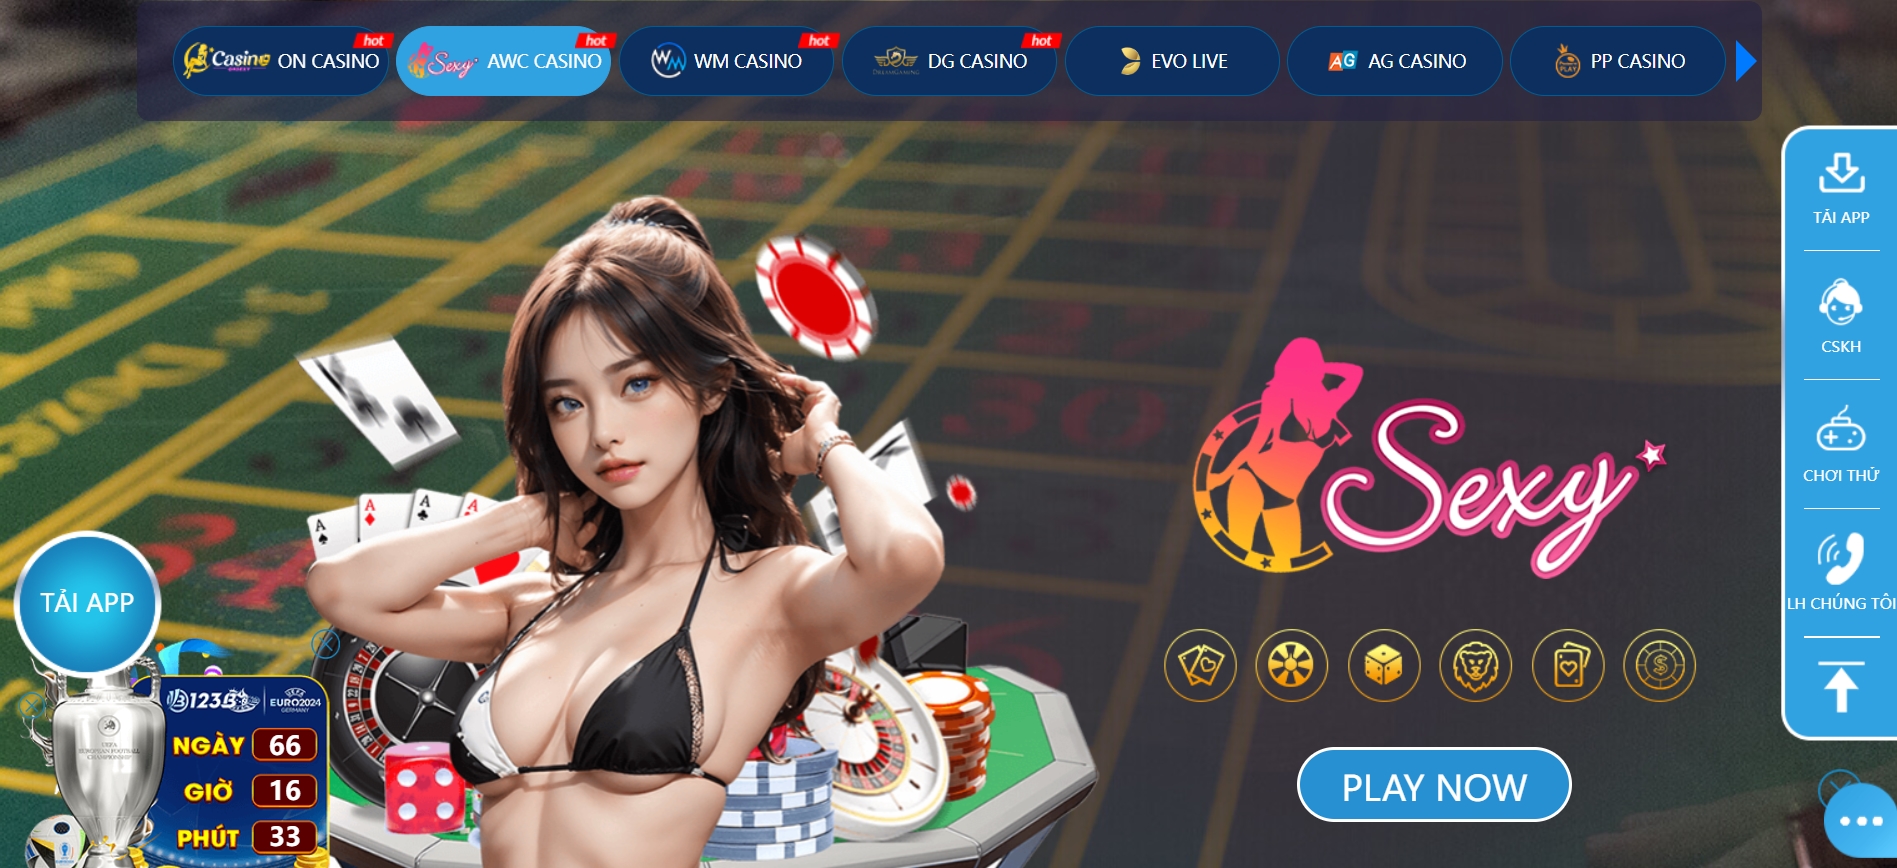 Nguyên nhân chính casino online 123b nổi tiếng trên thị trường là gì?